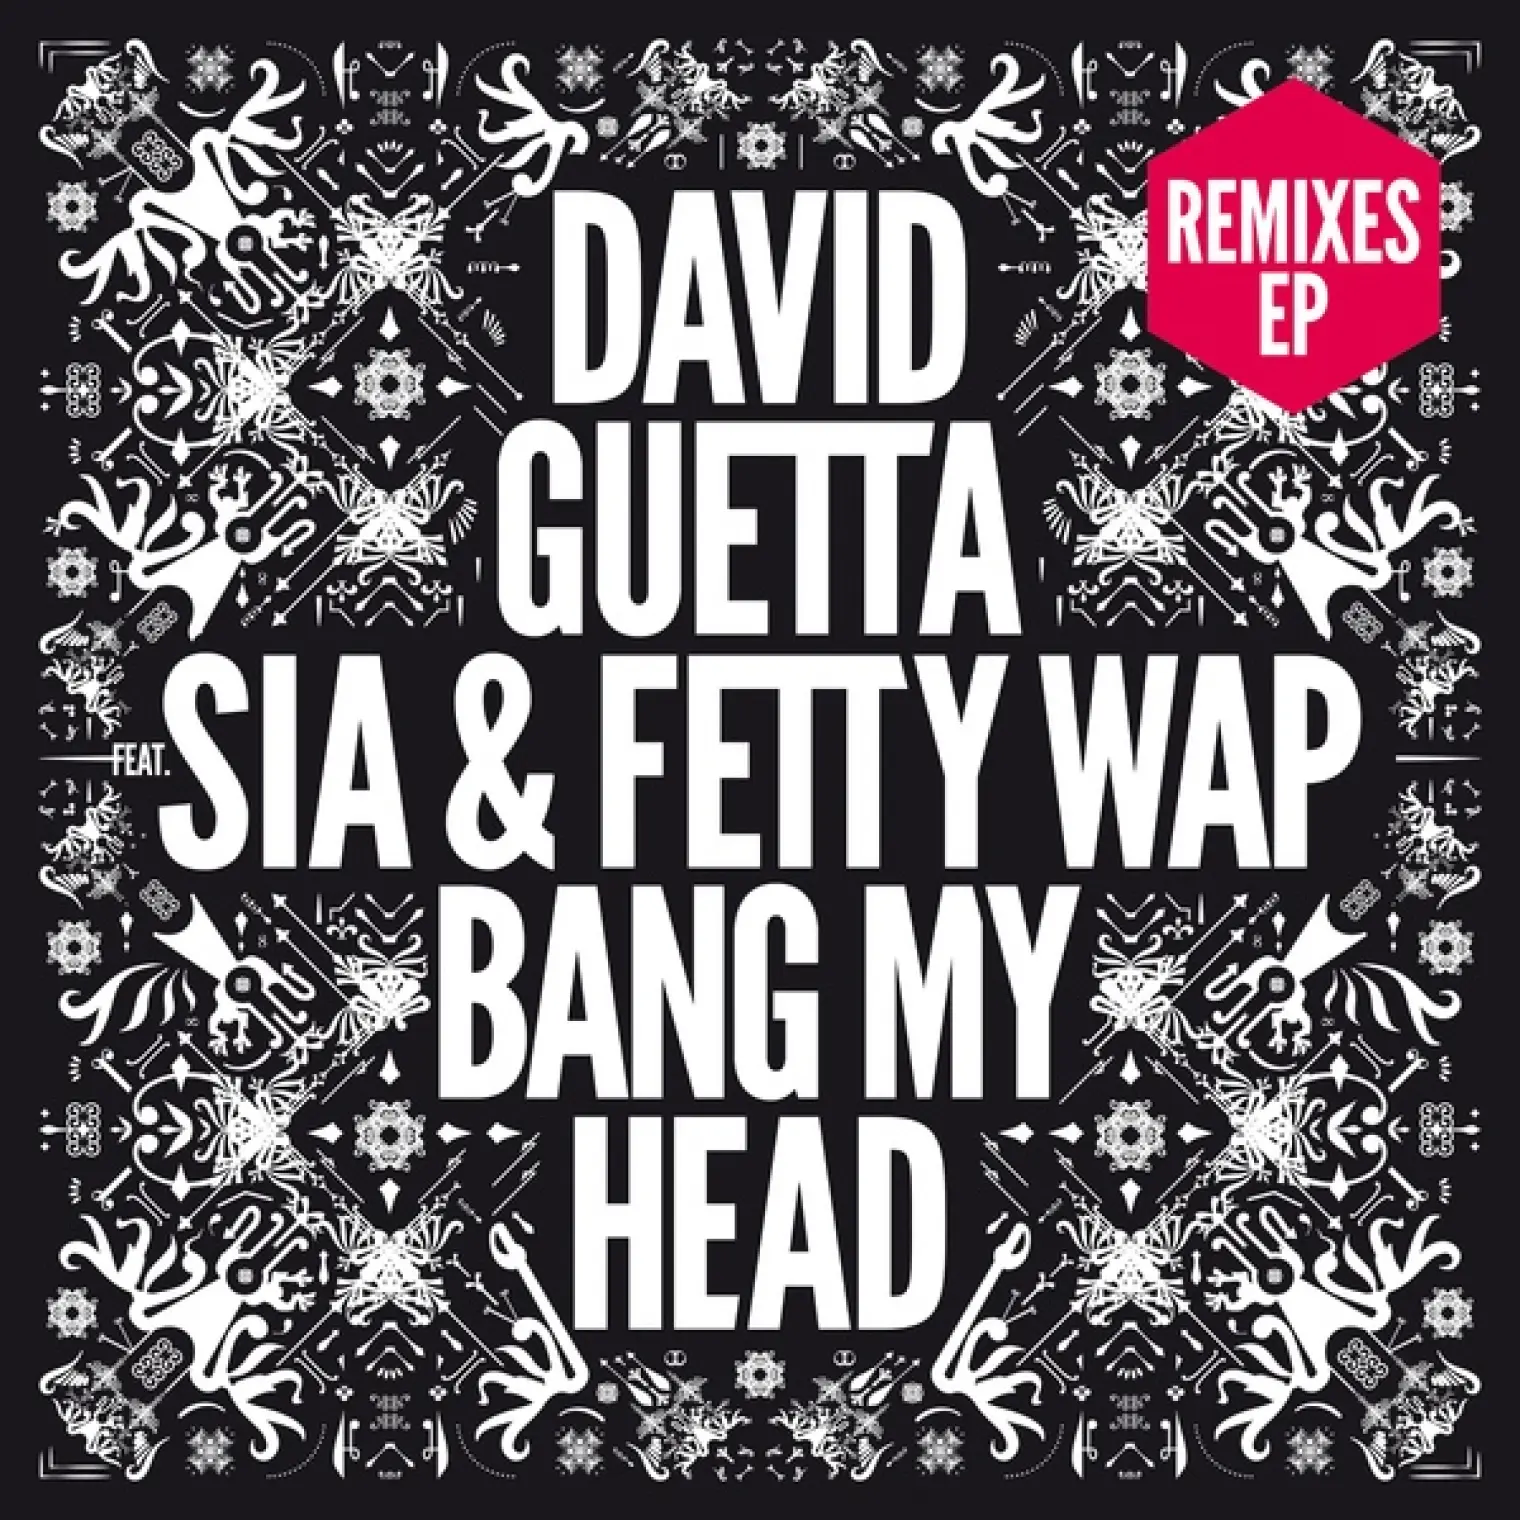 Bang My Head (feat. Sia & Fetty Wap) (Remixes EP) -  David Guetta 